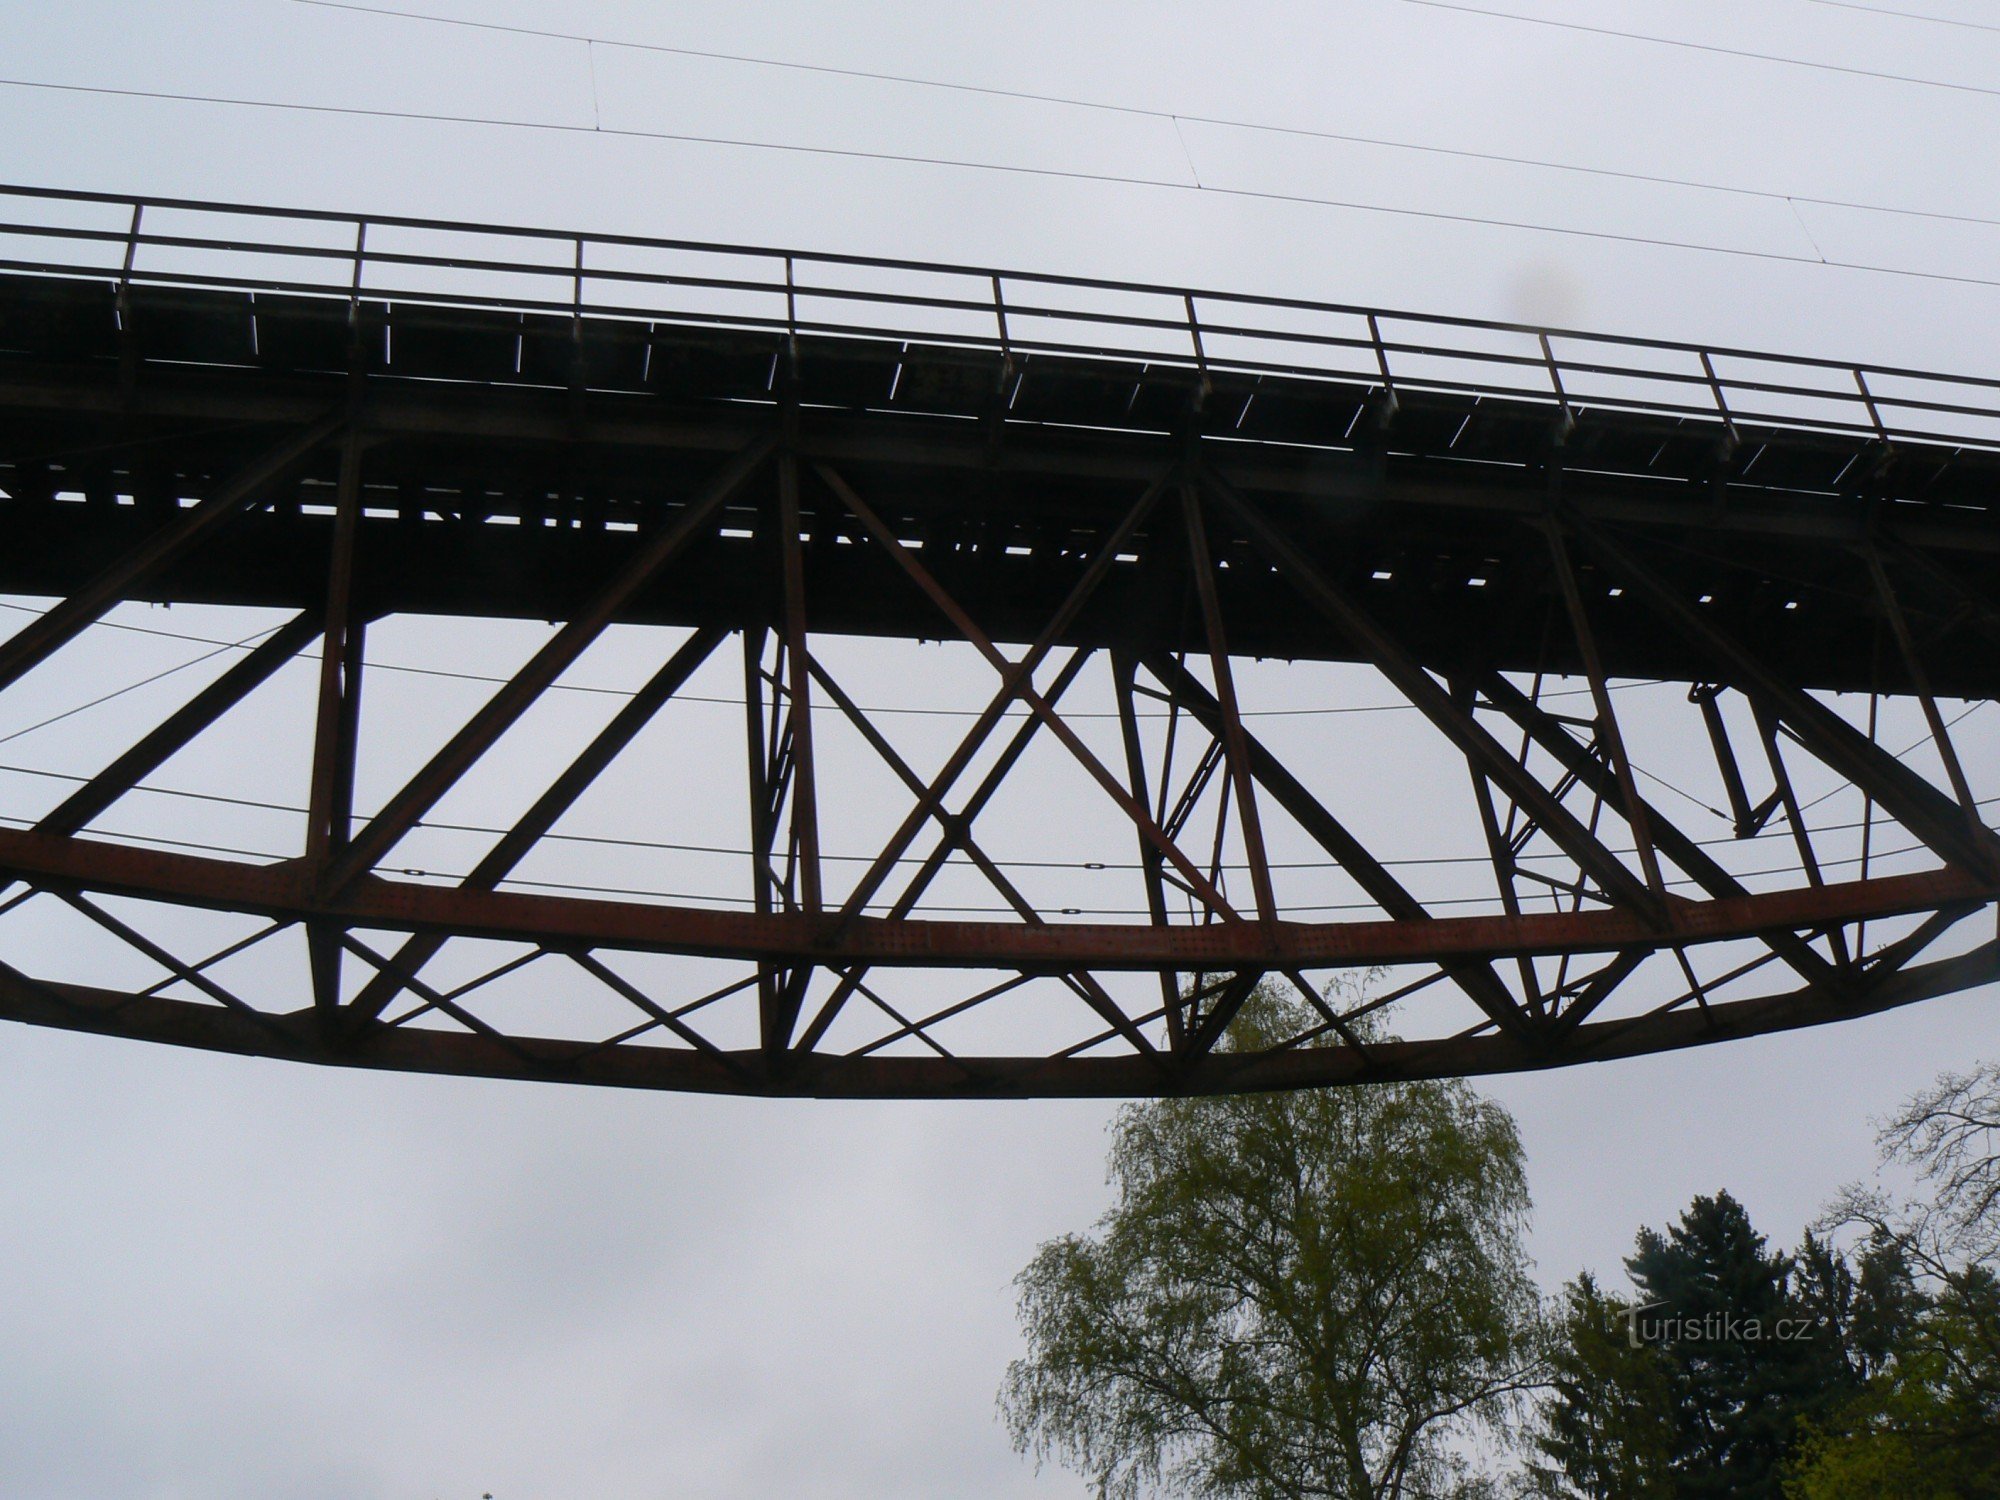 Konstrukcja mostu ma kształt półparaboliczny – skierowany w dół.